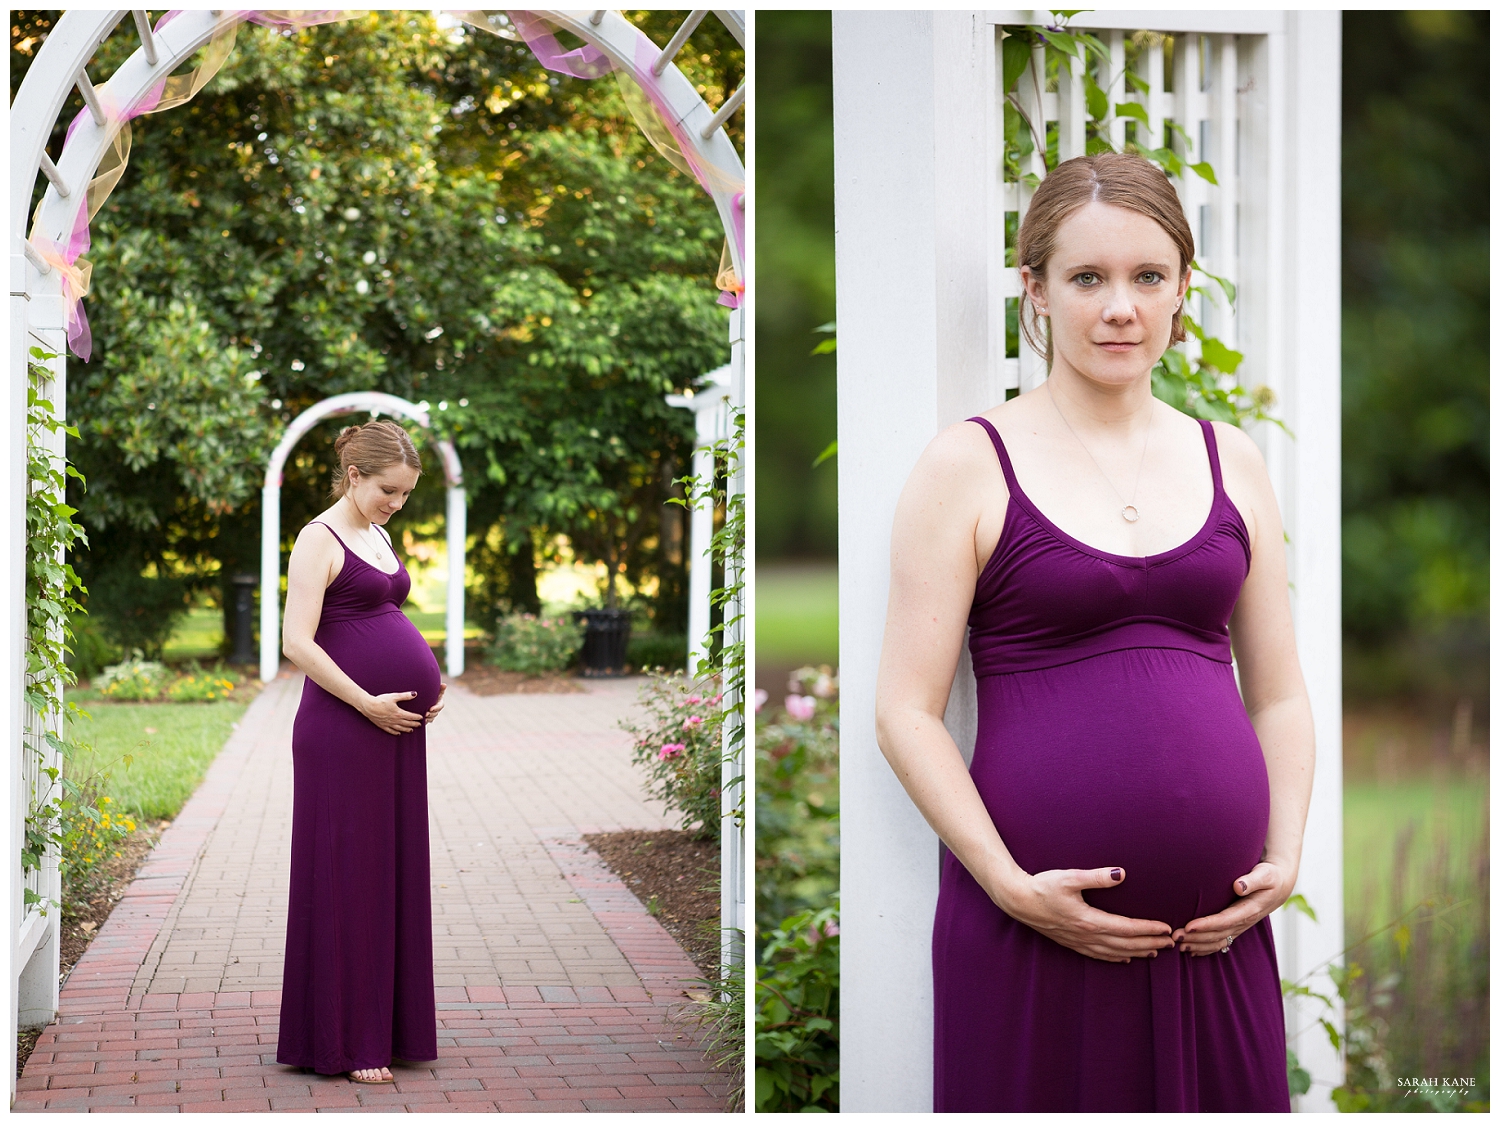 Maternity - Armour House & Gardens - Sarah Kane Photography138.JPG